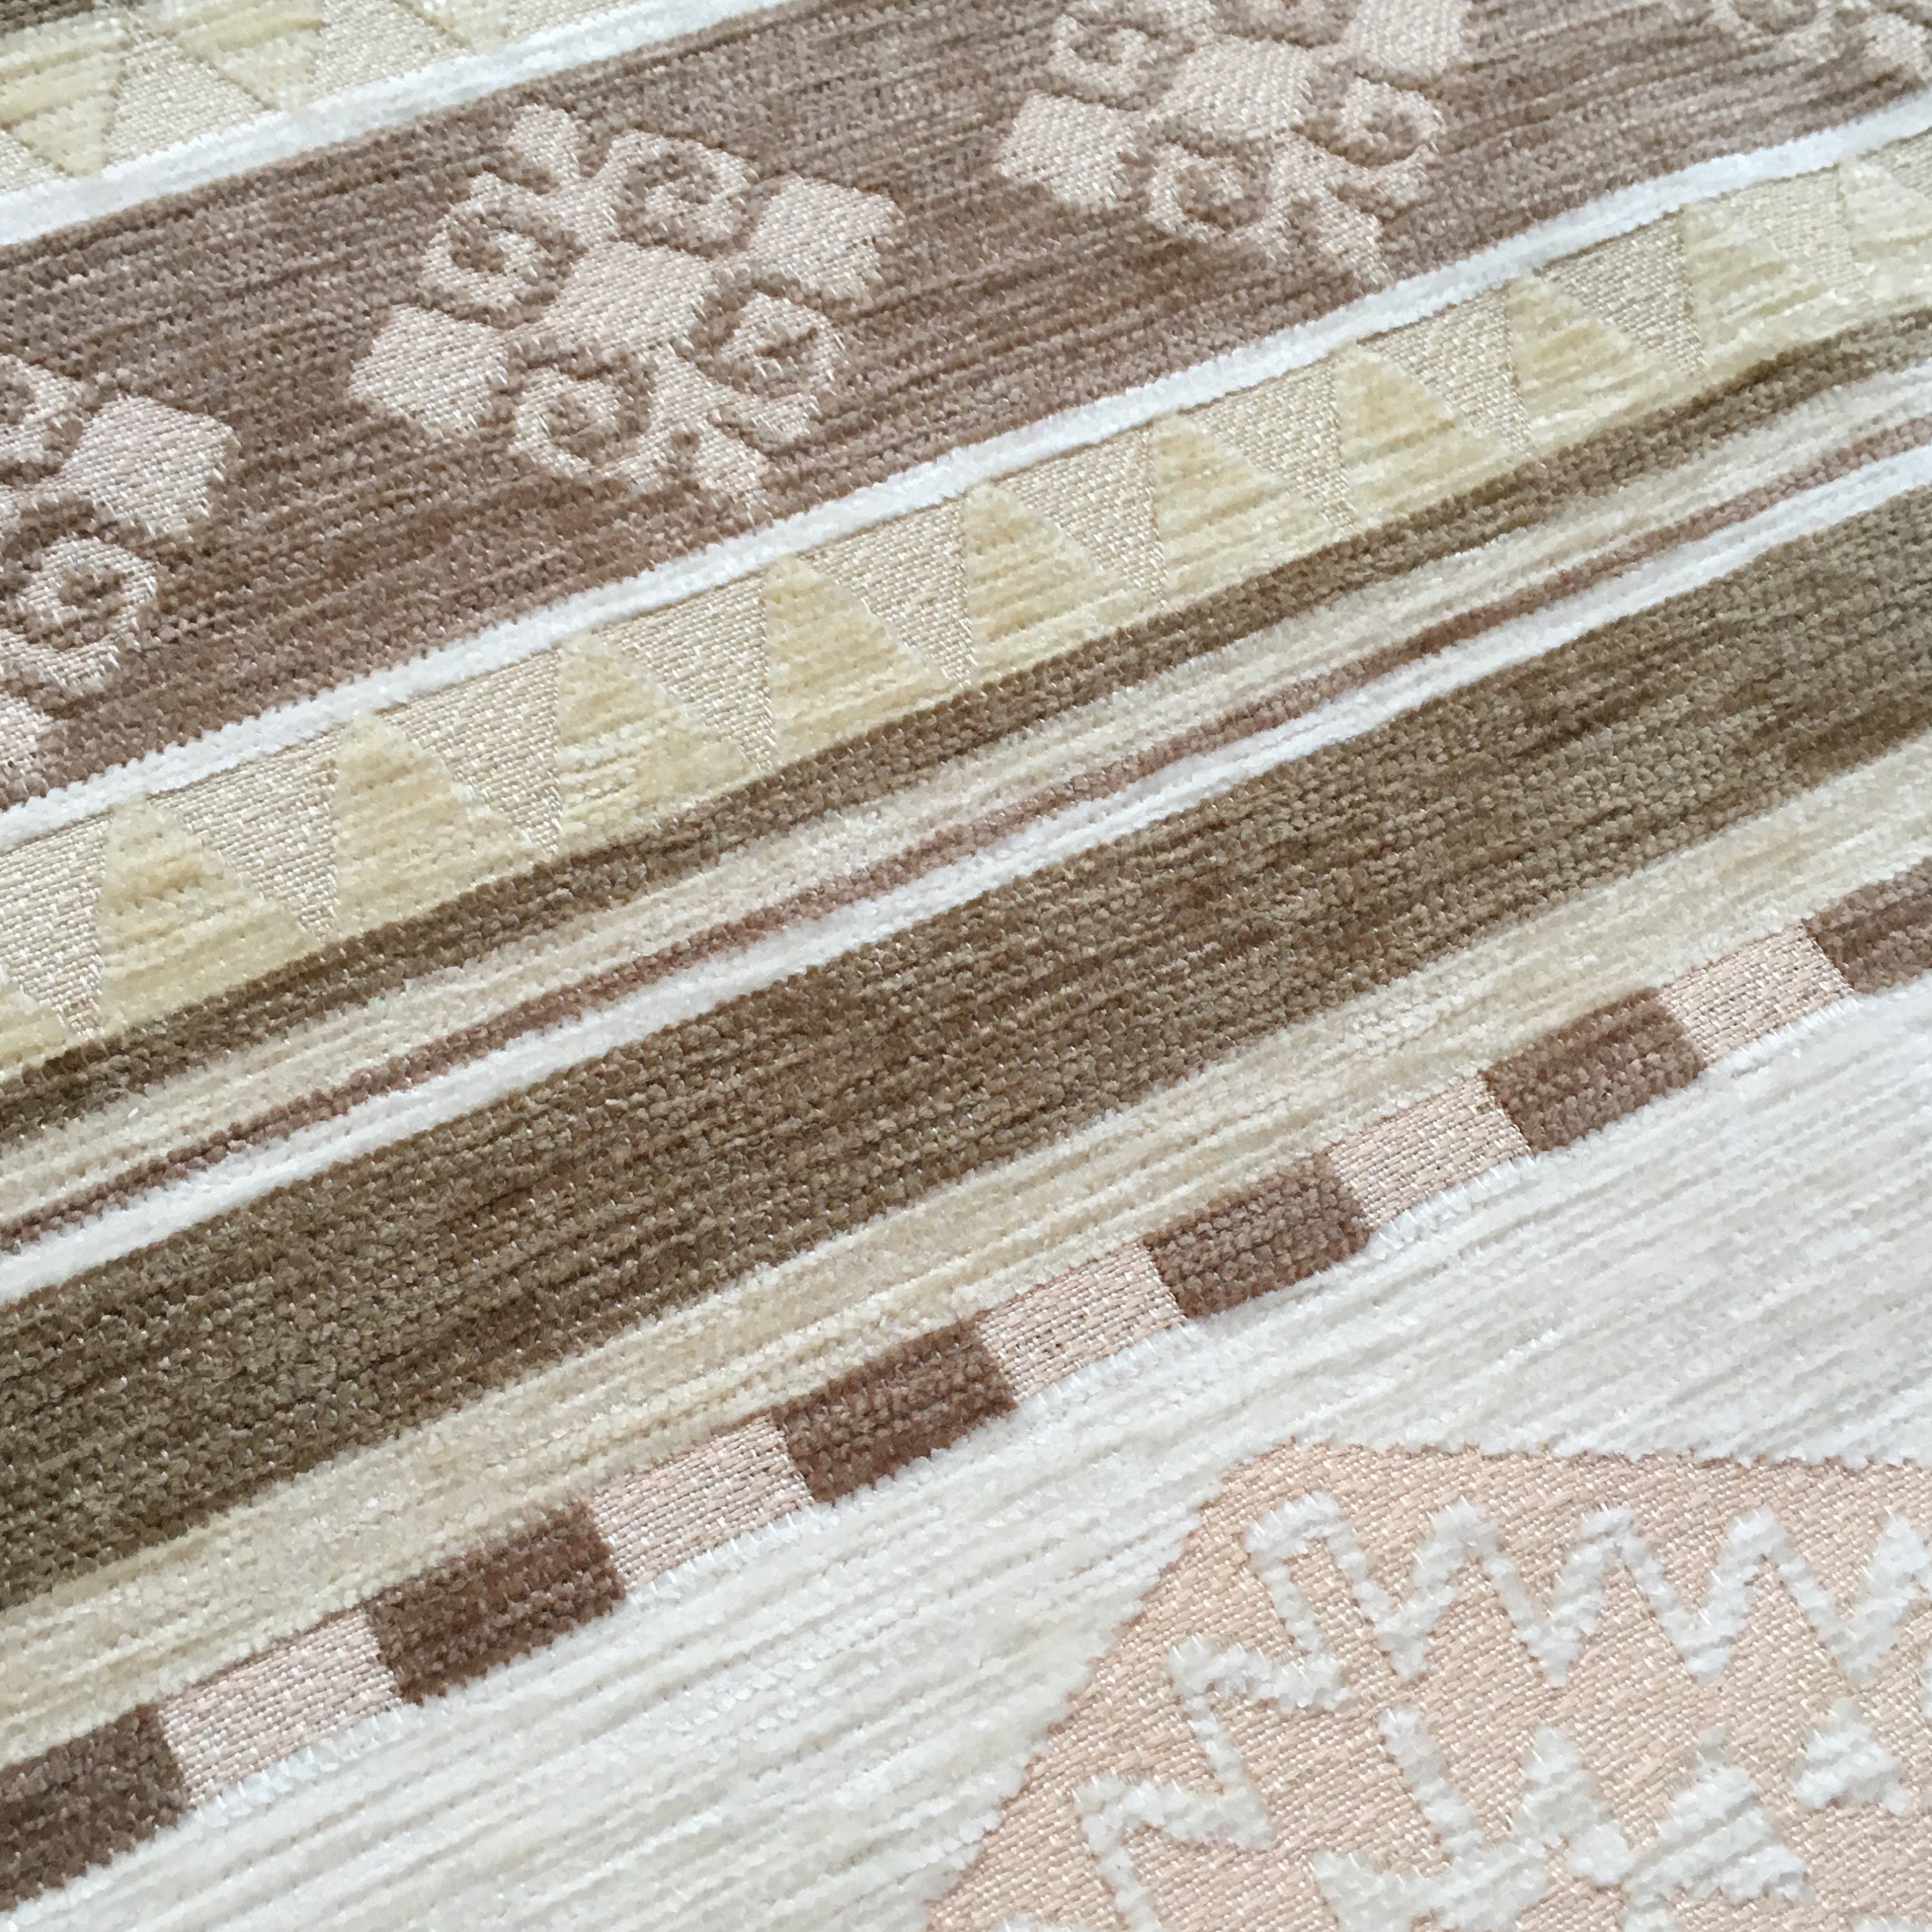  Telas de tapicería oriental turca azul marino por metro, tela  de chenilla tejida azteca tribal bohemio azteca, decoración alfombra, sofá,  silla, muebles, tela de tapicería (39.4 x 55.1 in) : Hogar